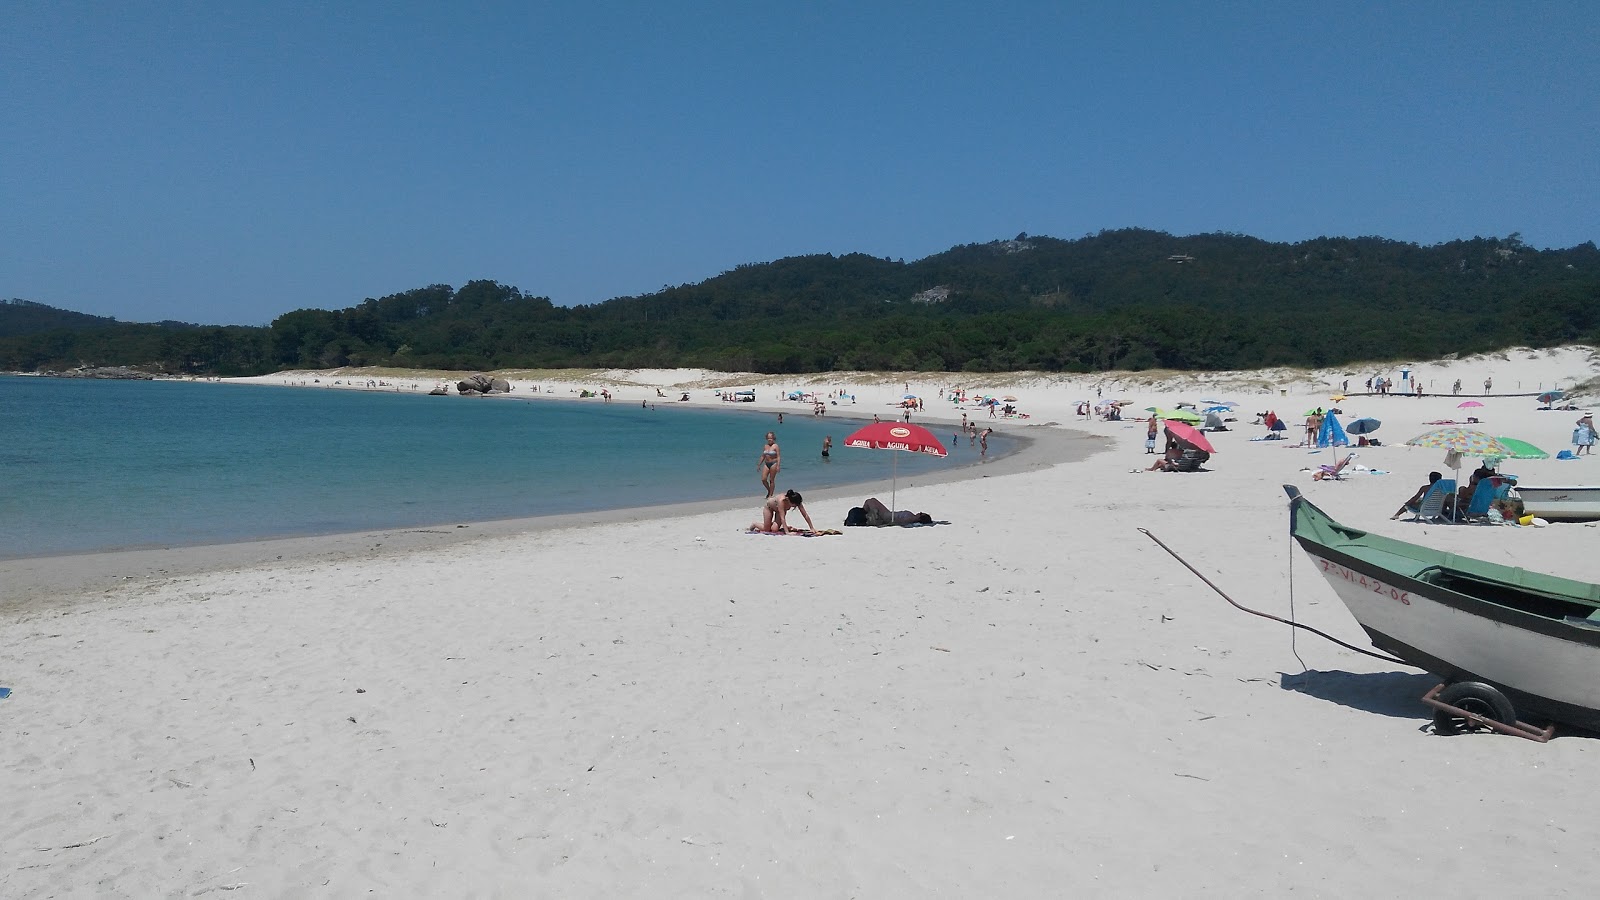 Playa de Nerga'in fotoğrafı geniş plaj ile birlikte